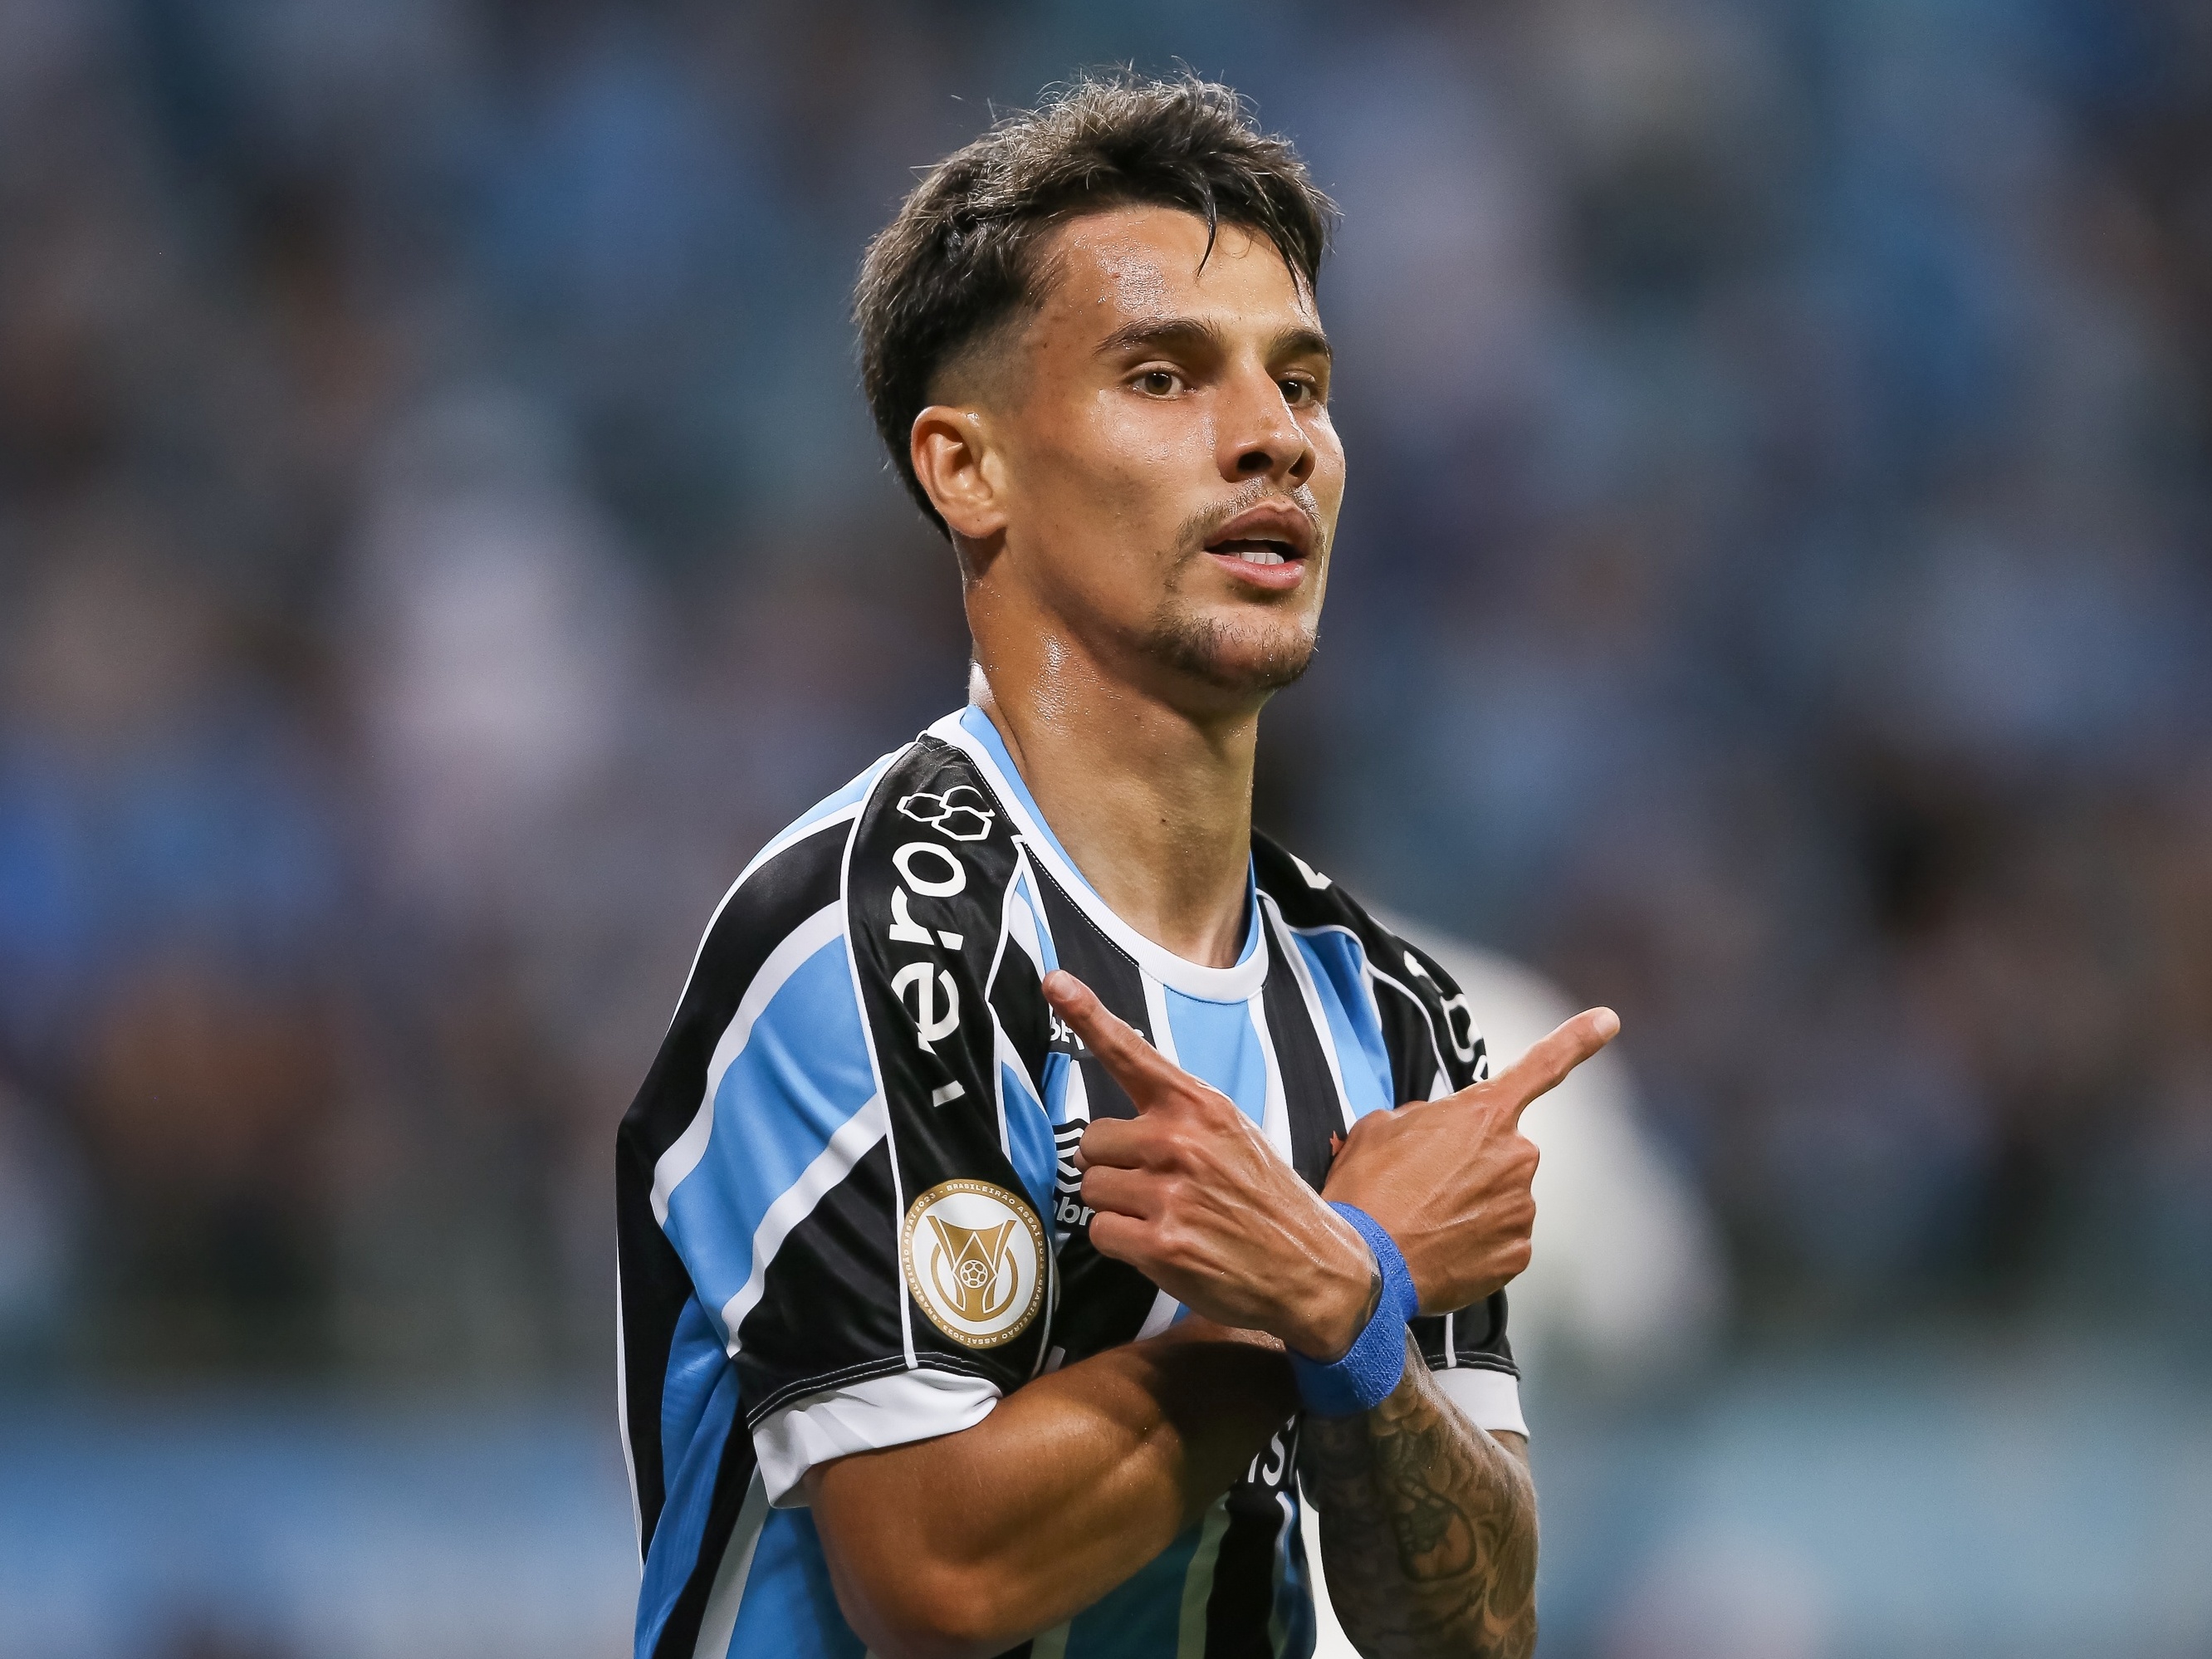 Ferreira passa por cirurgia e já tem previsão para retornar ao Grêmio